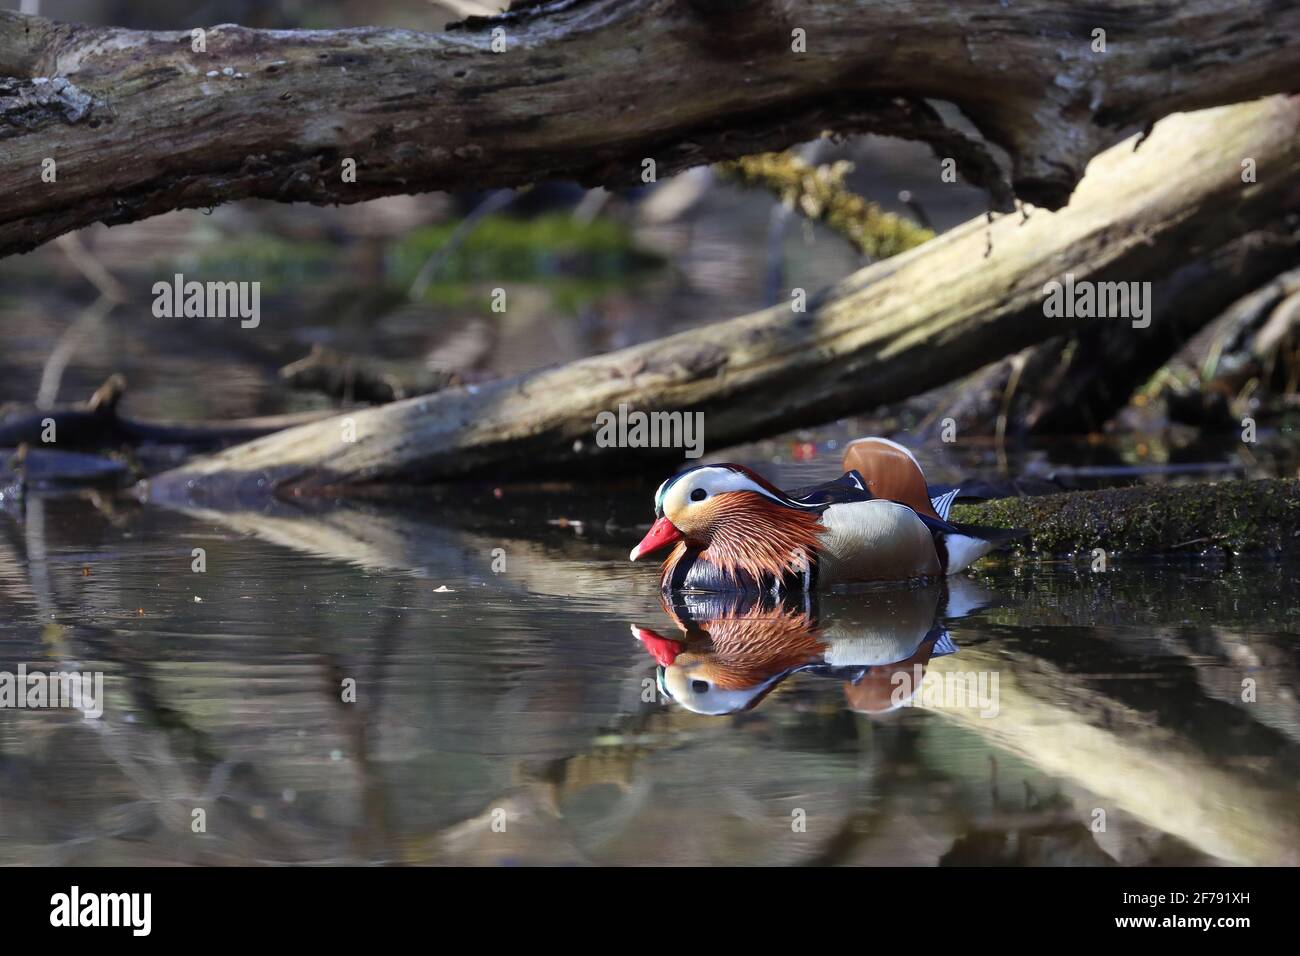 anatra nuotare in uno stagno selvaggio, mandarino maschile Foto Stock